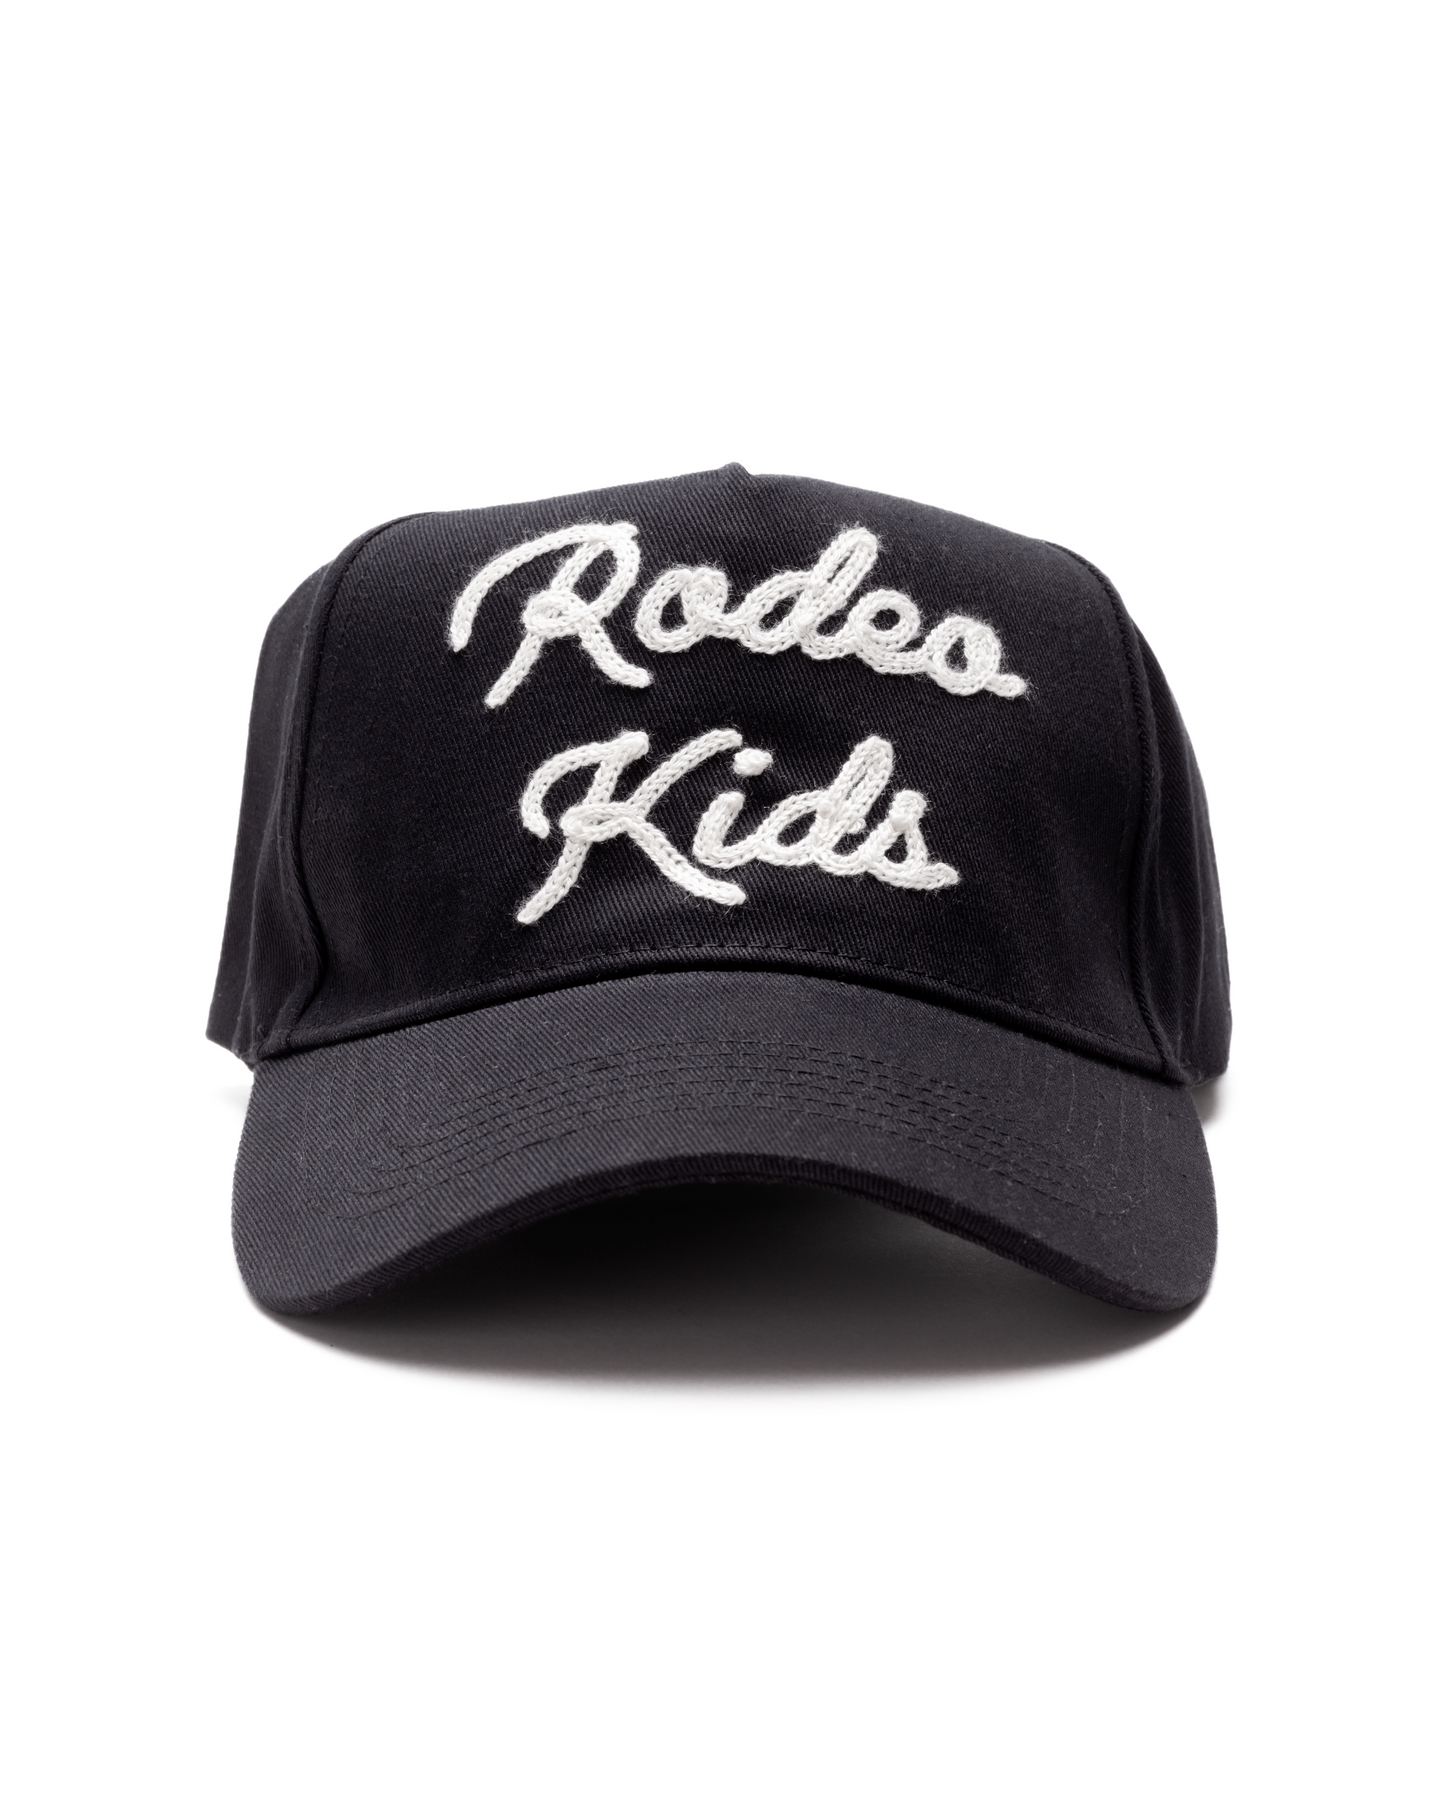 Rodeo Kids Cap - OS